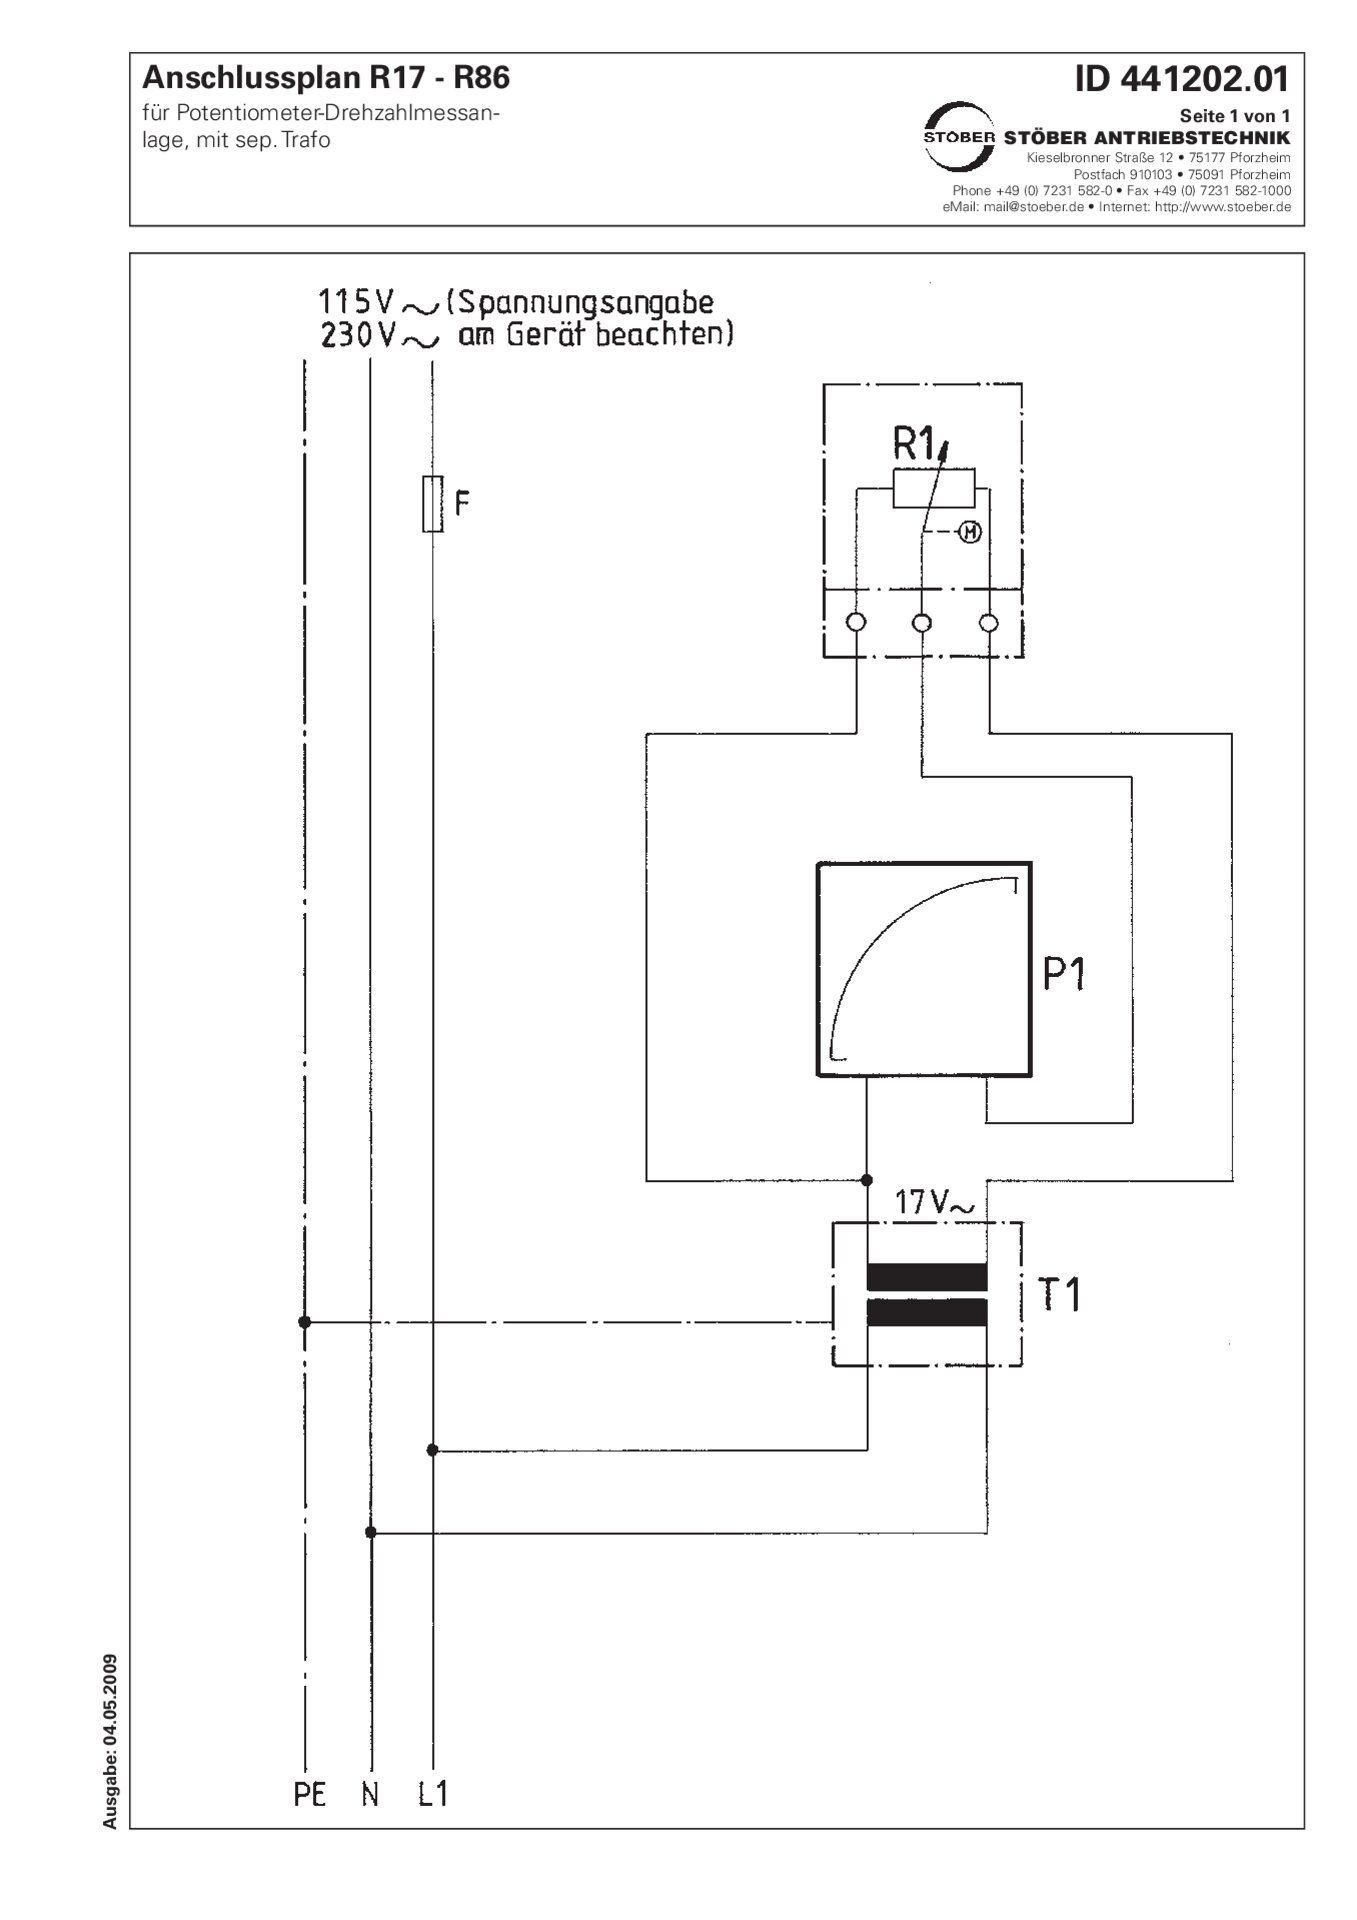 Plan de connexion R17-R86 Dispositif de mesure de vitesse-Potentiomètre + transfo séparément